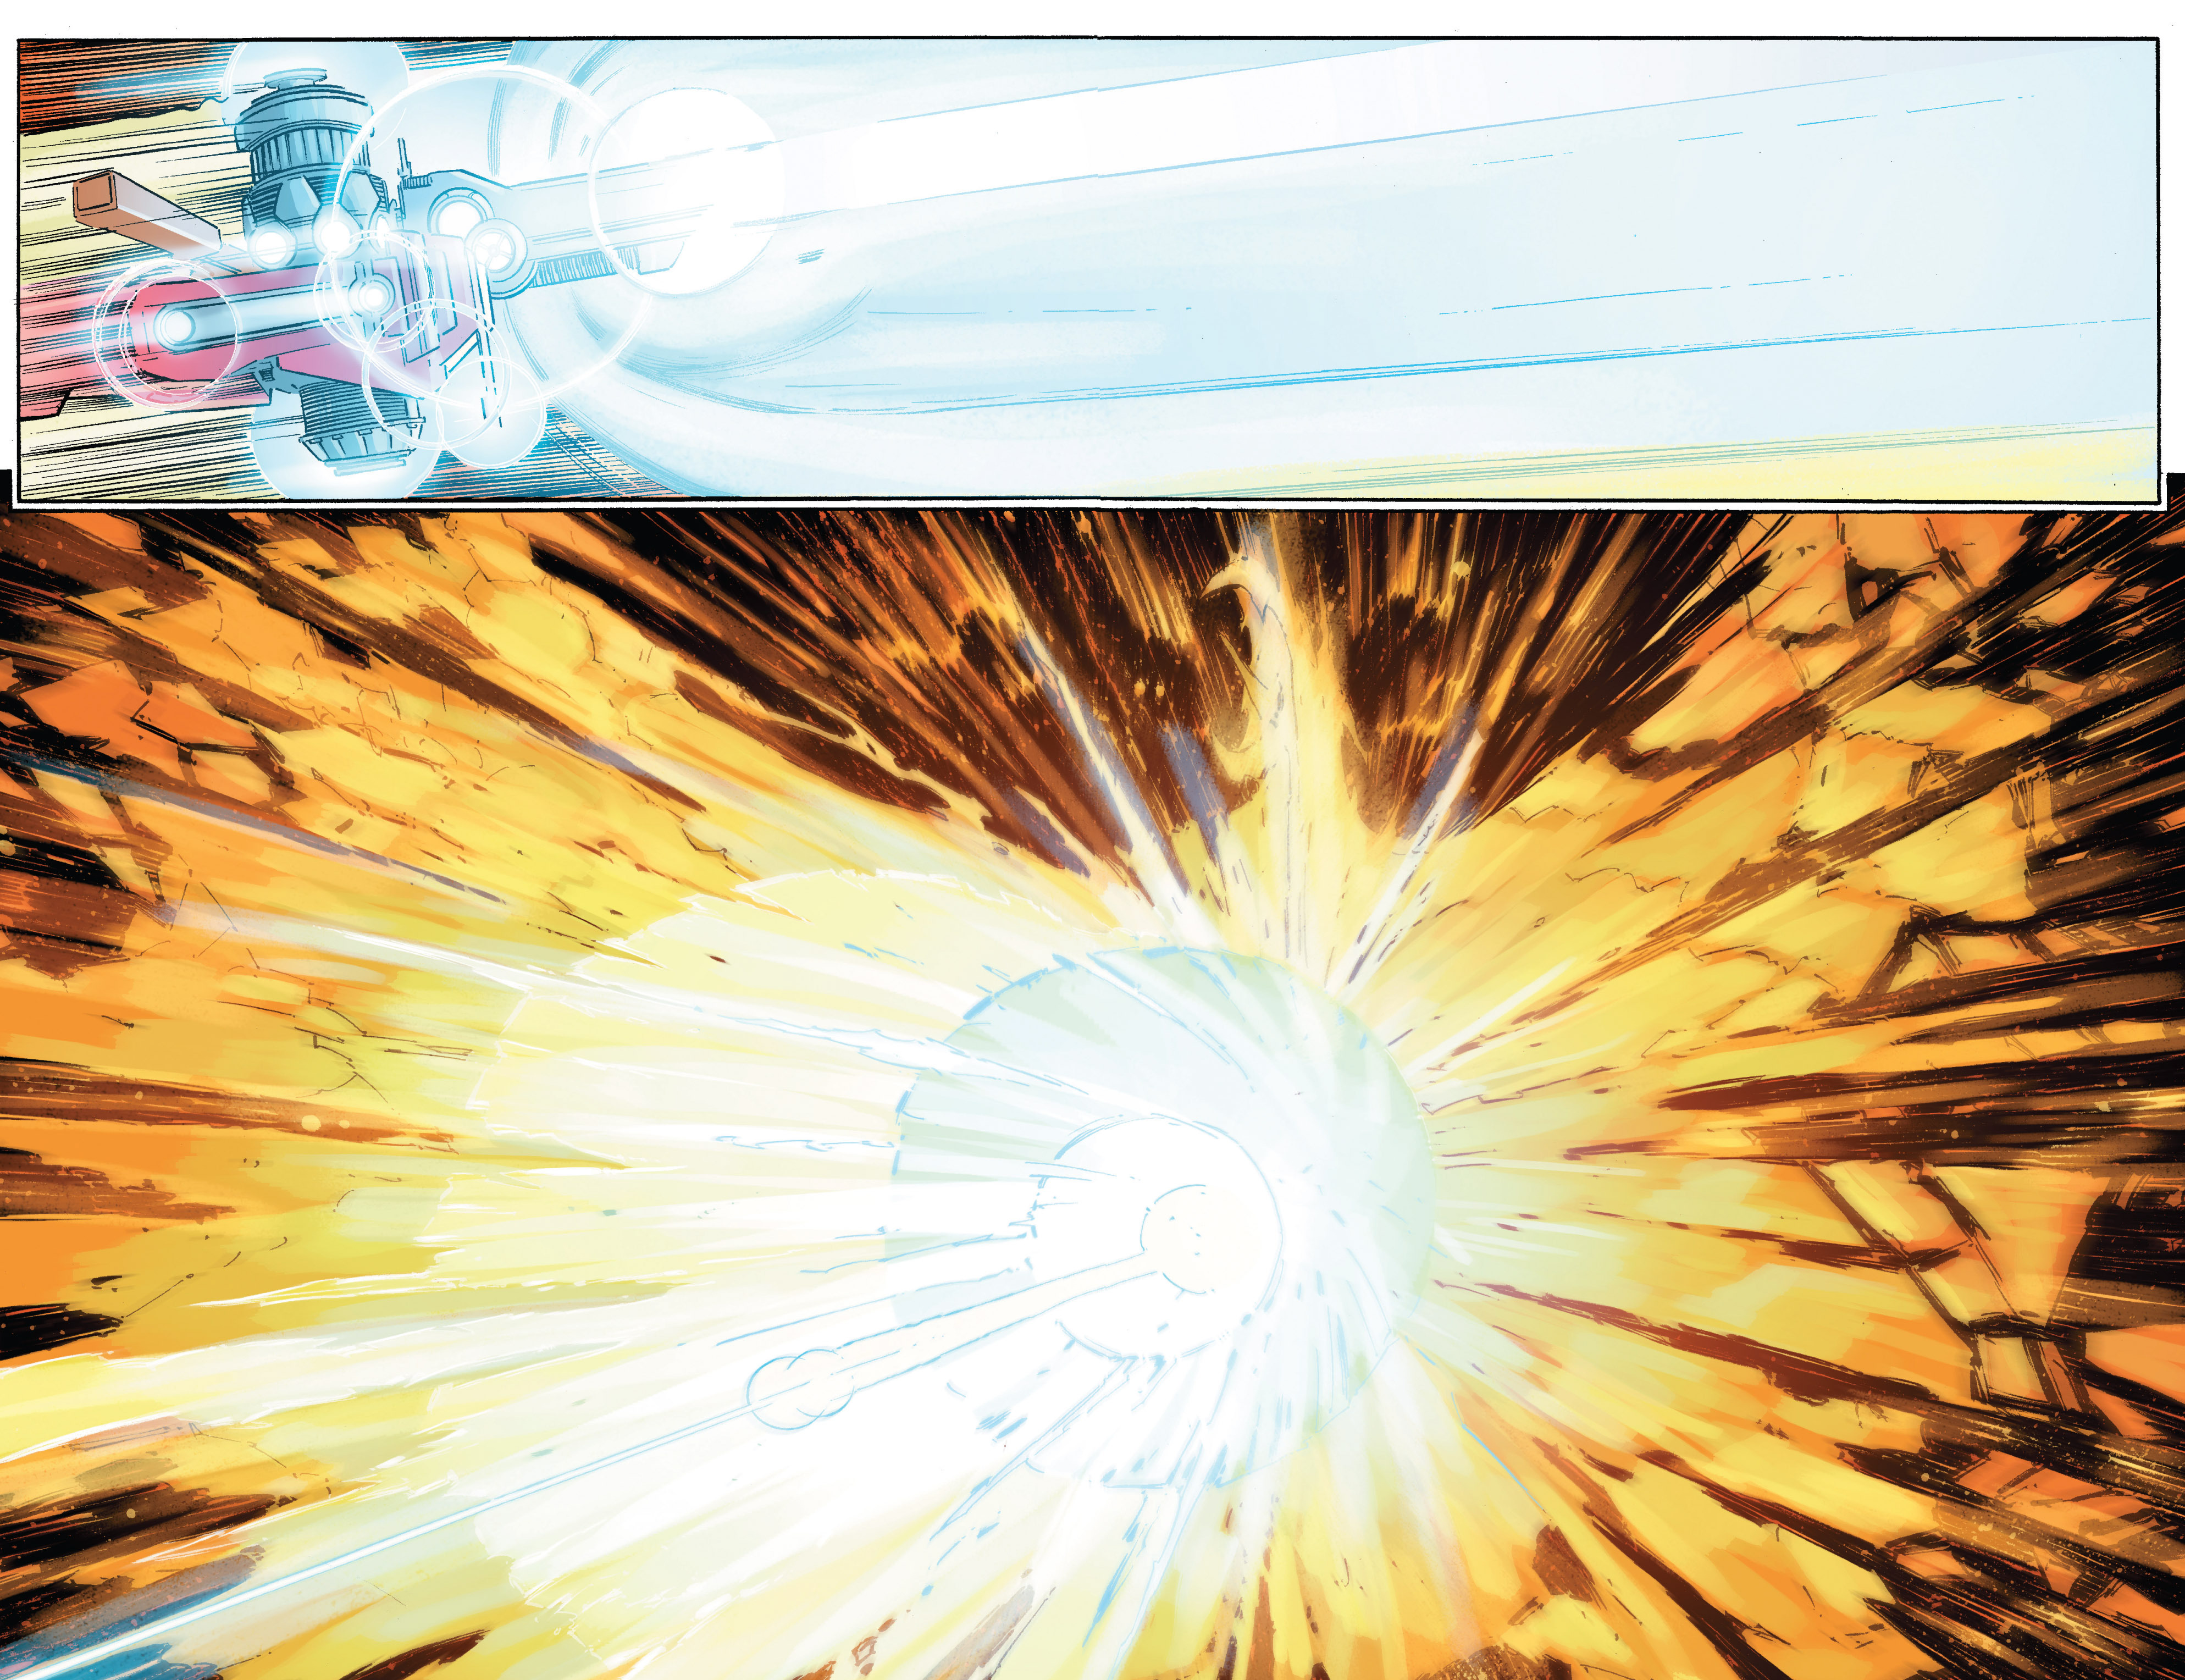 Read online Avengers Vs. X-Men comic -  Issue #5 - 17